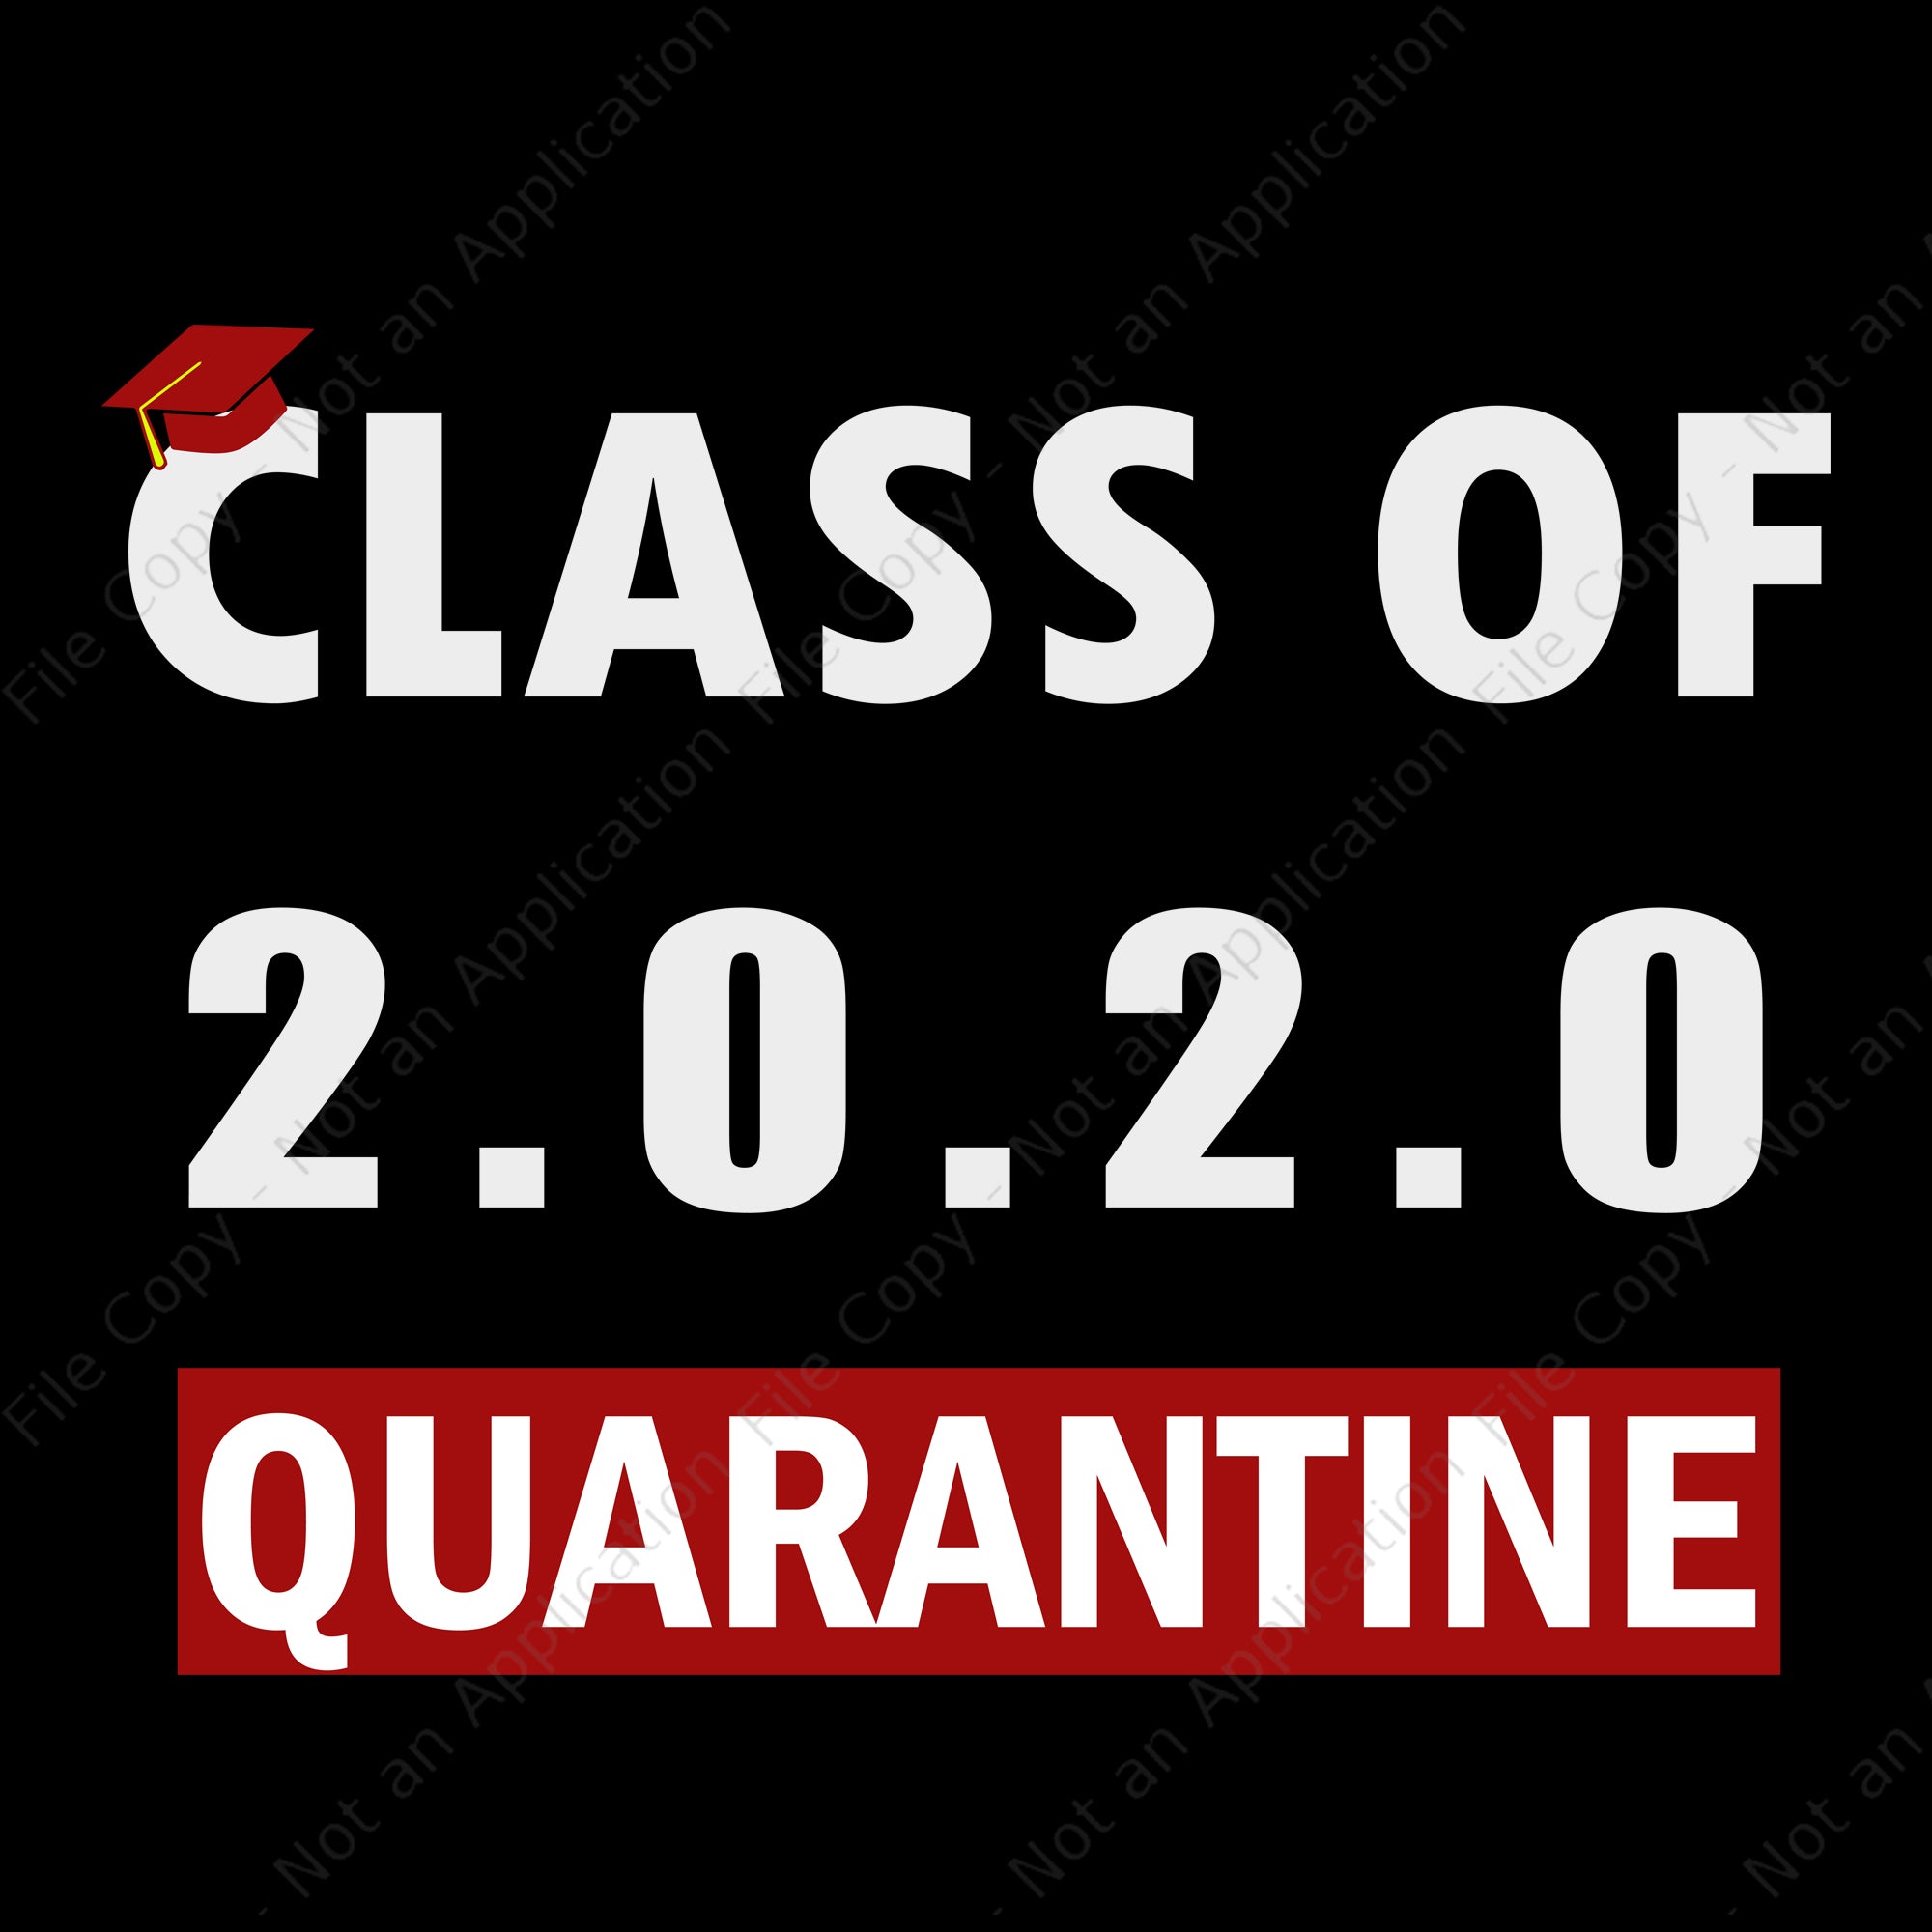 Class of 2020 quarantined svg, class of 2020 quarantined, senior 2020 svg, senior 2020 png, eps, dxf file